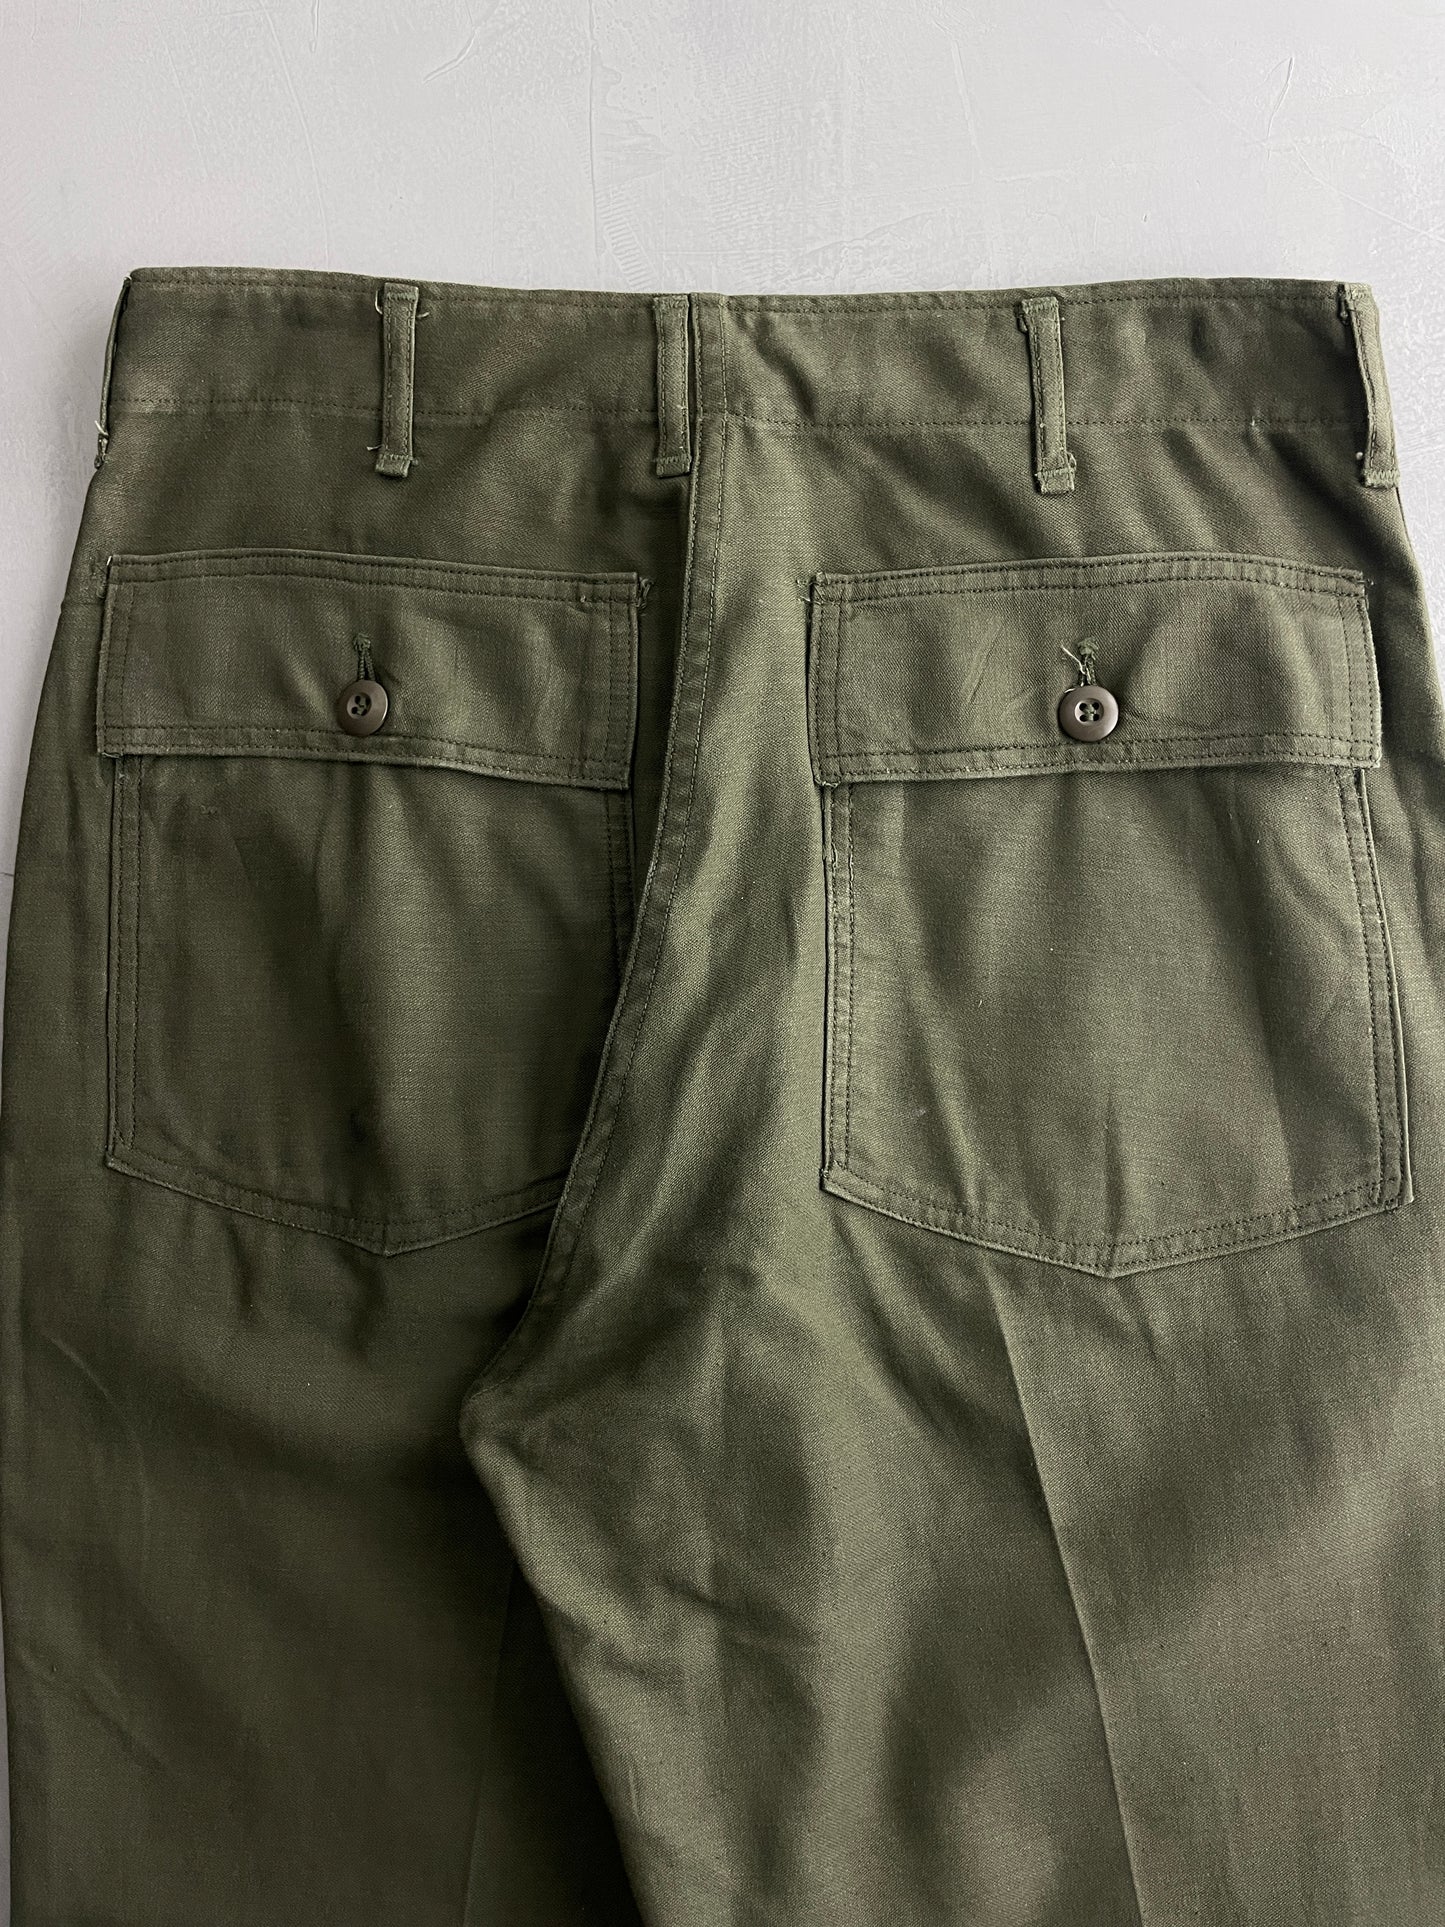 OG-107 US Army Pants [34"]